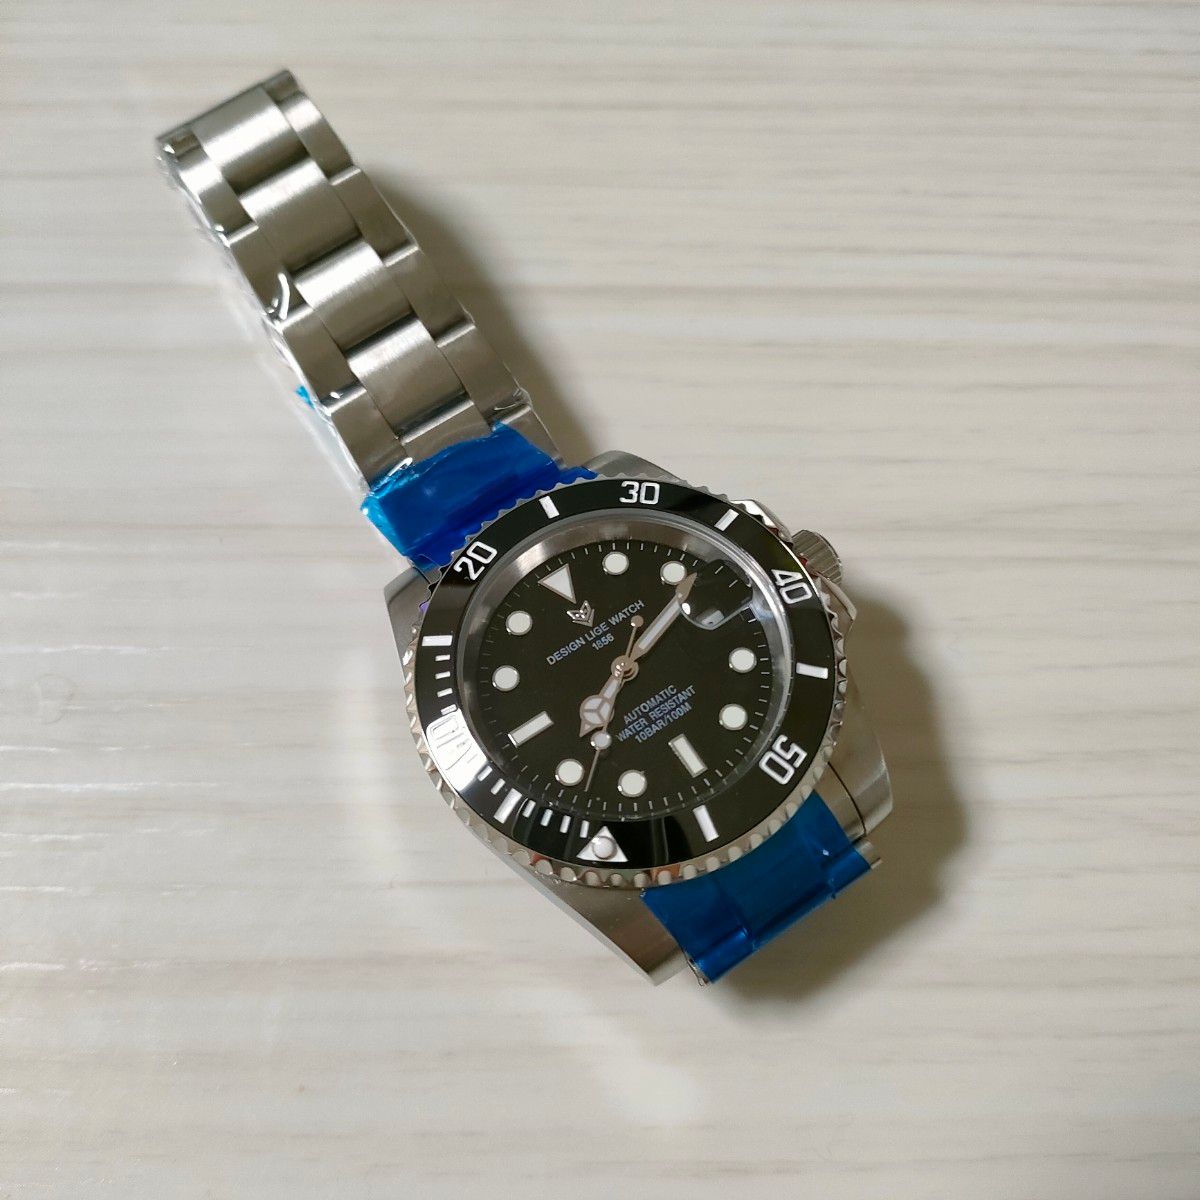 新品未使用品 リゲ 高級ブランド オマージュダイバーズウォッチ腕時計